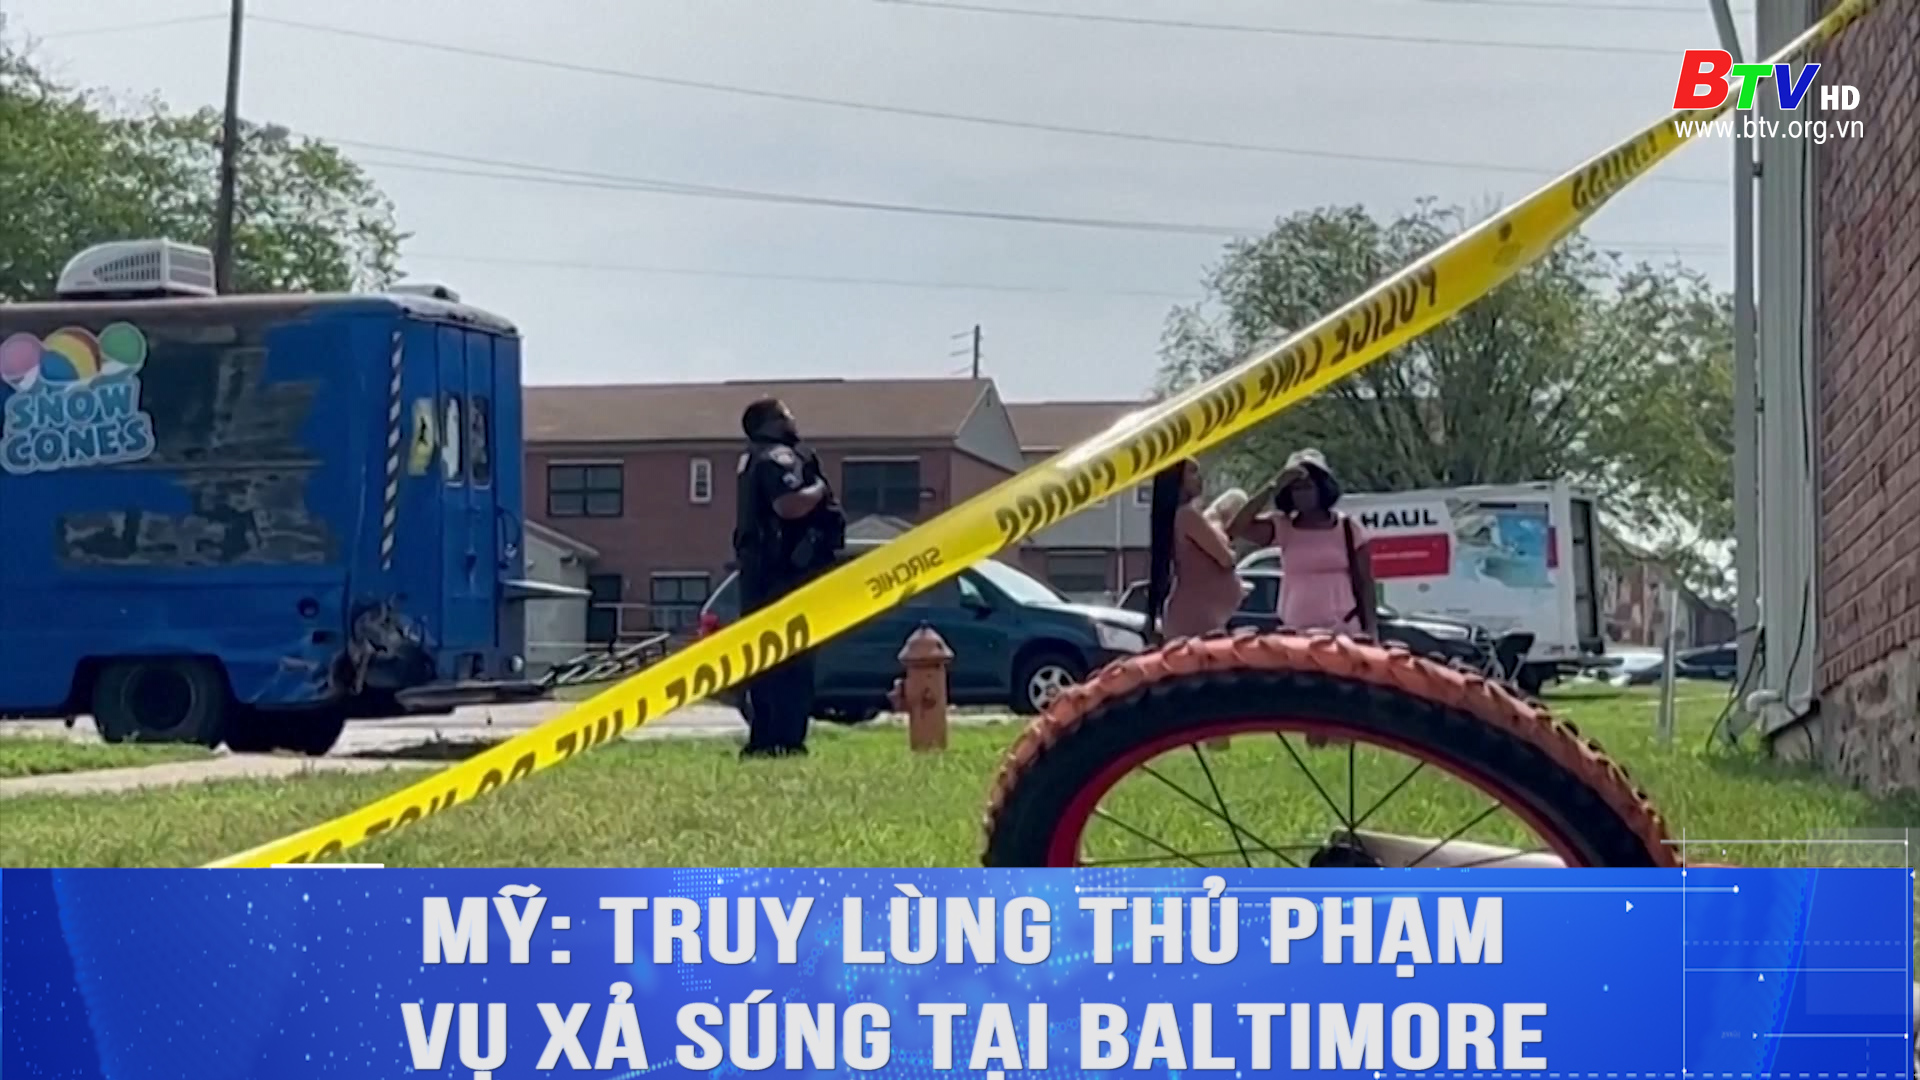 Mỹ truy lùng thủ phạm vụ xả súng tại Baltimore	